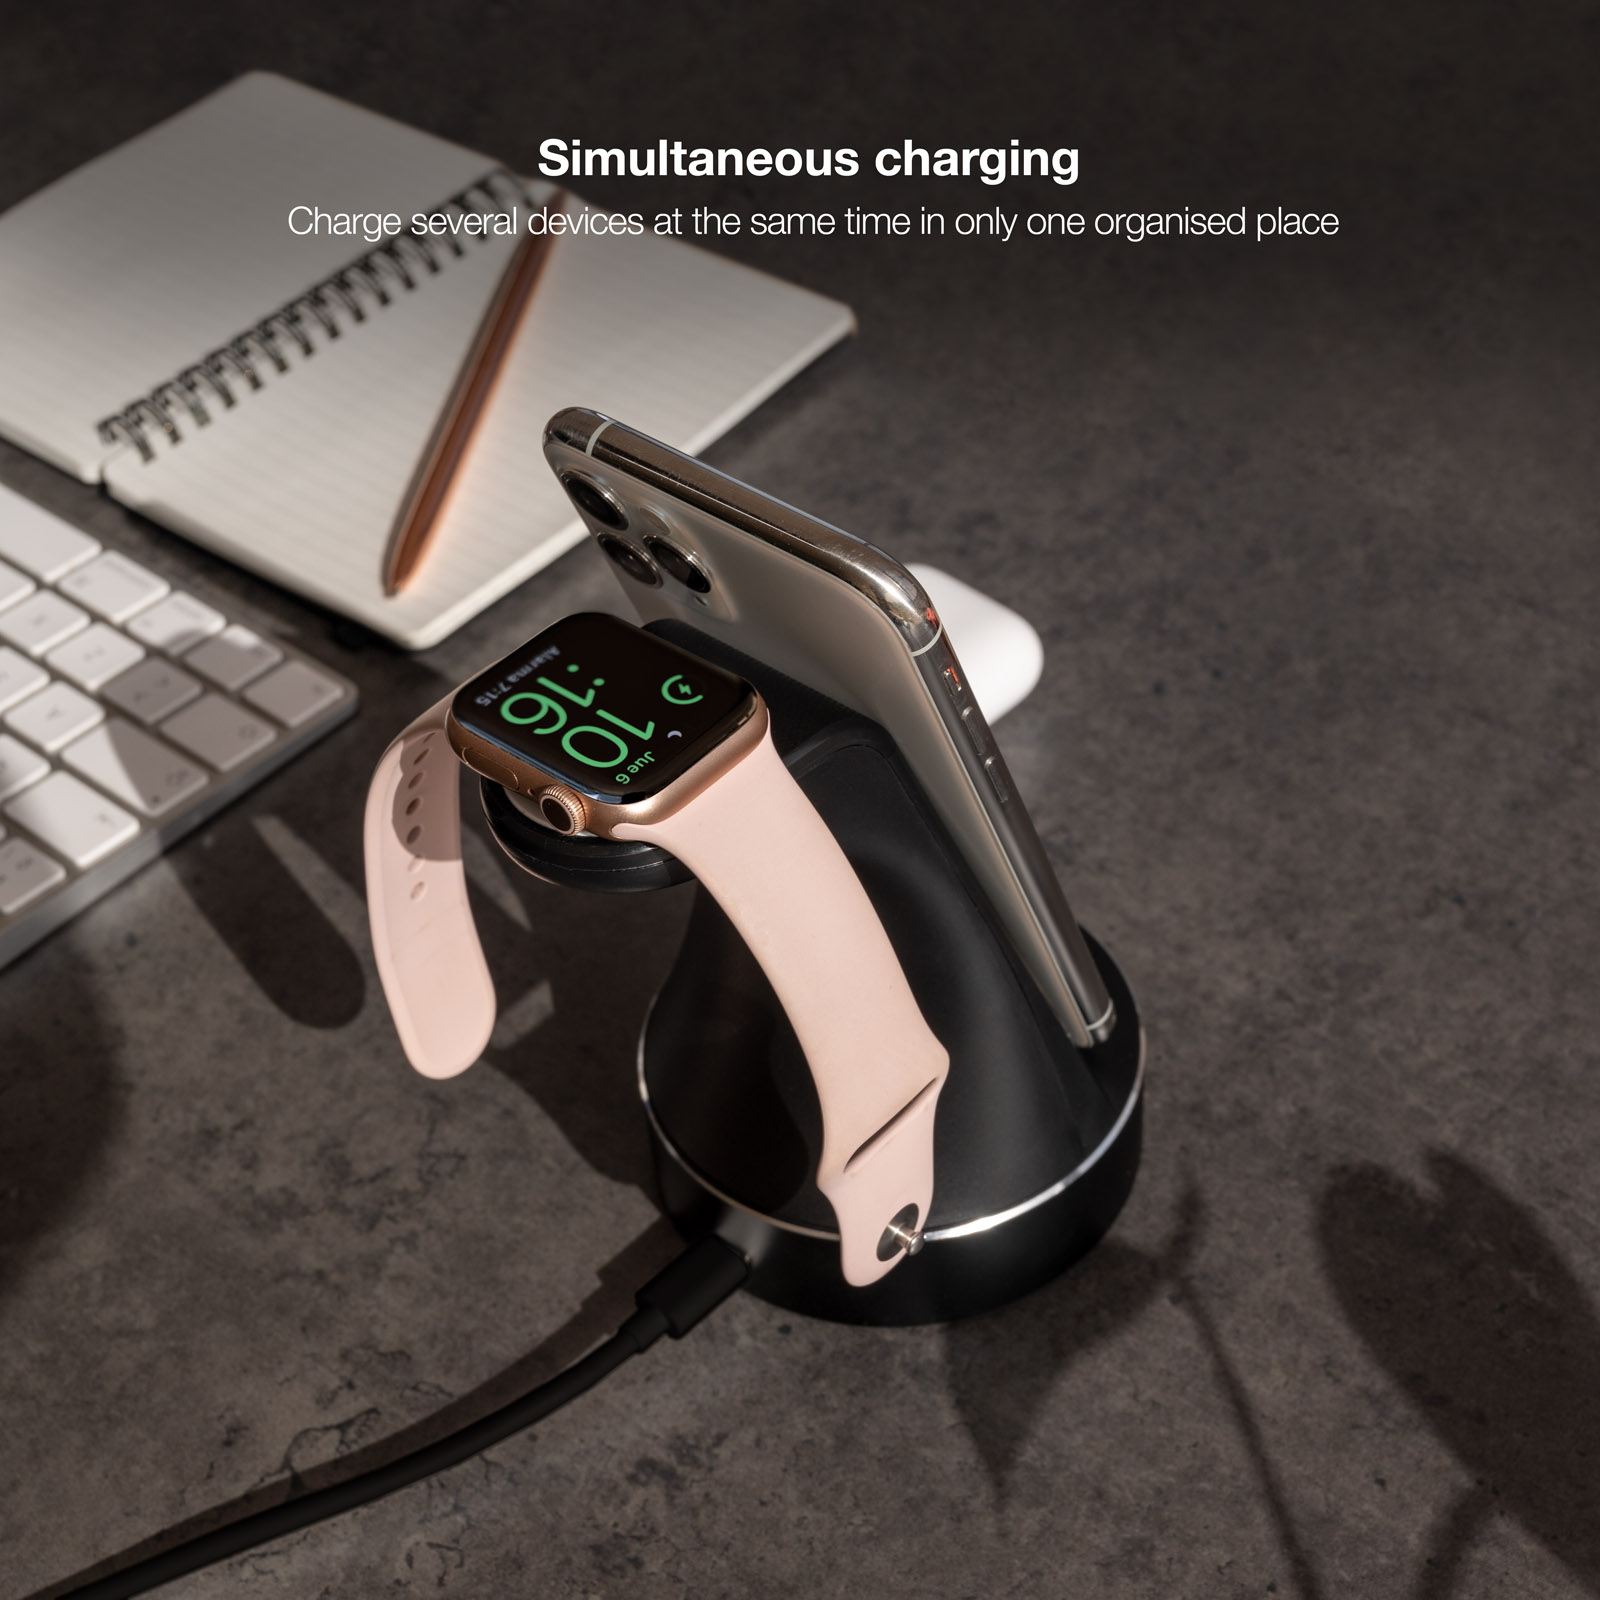 TQCD02W Base de Carga Inalámbrica para Apple Watch y iPhone/Smartphone, Negro